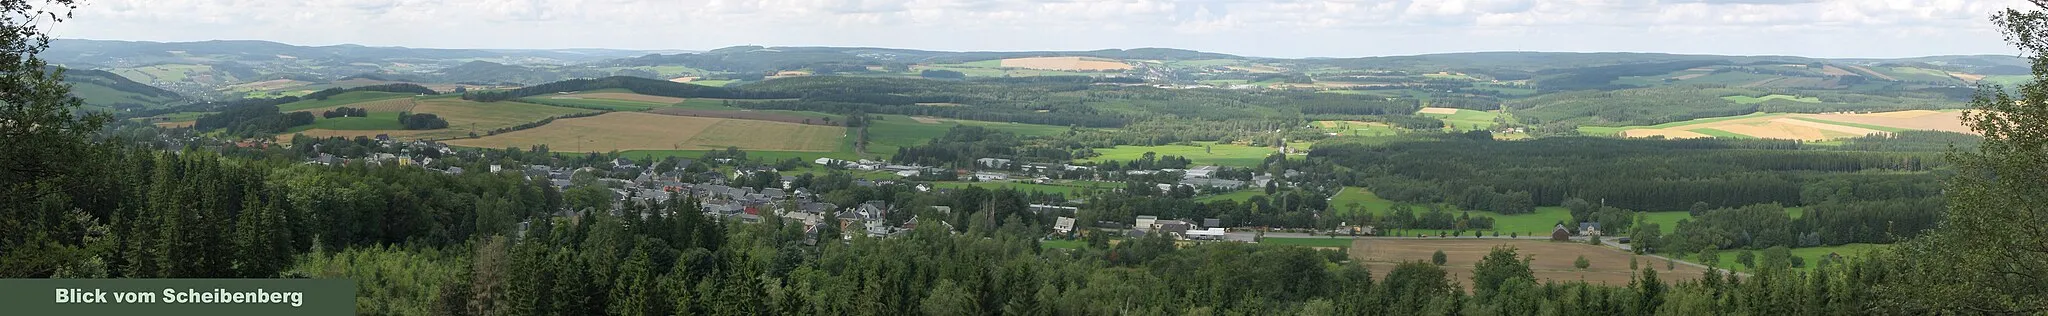 Photo showing: Panorama vom Scheibenberg (807m ü.NN) im Erzgebirge in die Richtung der Stadt Scheibenberg mit Blick auf die Morgenleithe (812m ü.NN), den Spiegelwald (728m ü.NN), Schatzenstein (760m ü.NN) und den Geyerschen Wald mit dem Fernsehturm Geyer. (von links)